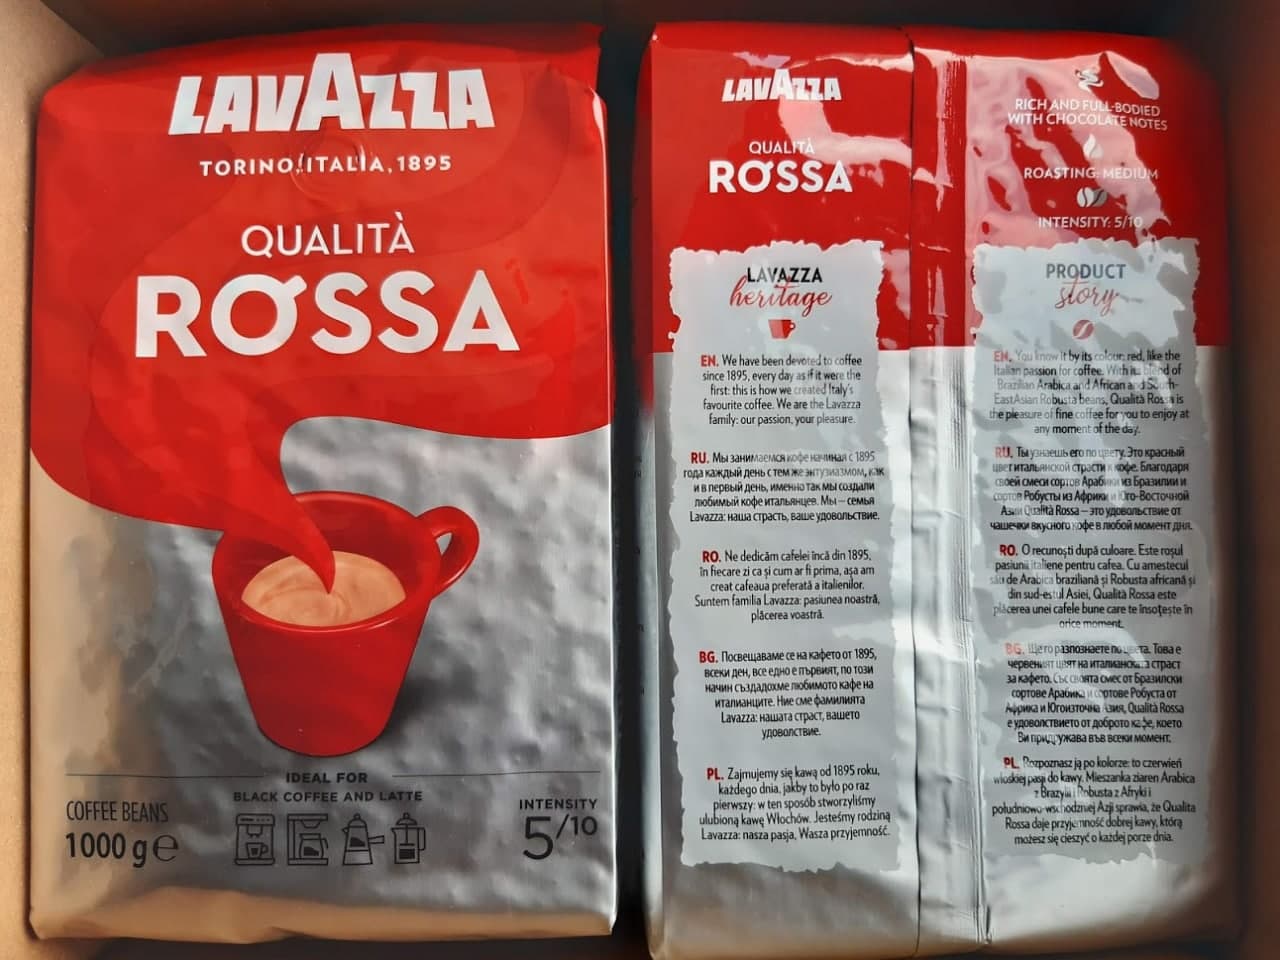 Kohvioad "LAVAZZA" Qualita Rossa